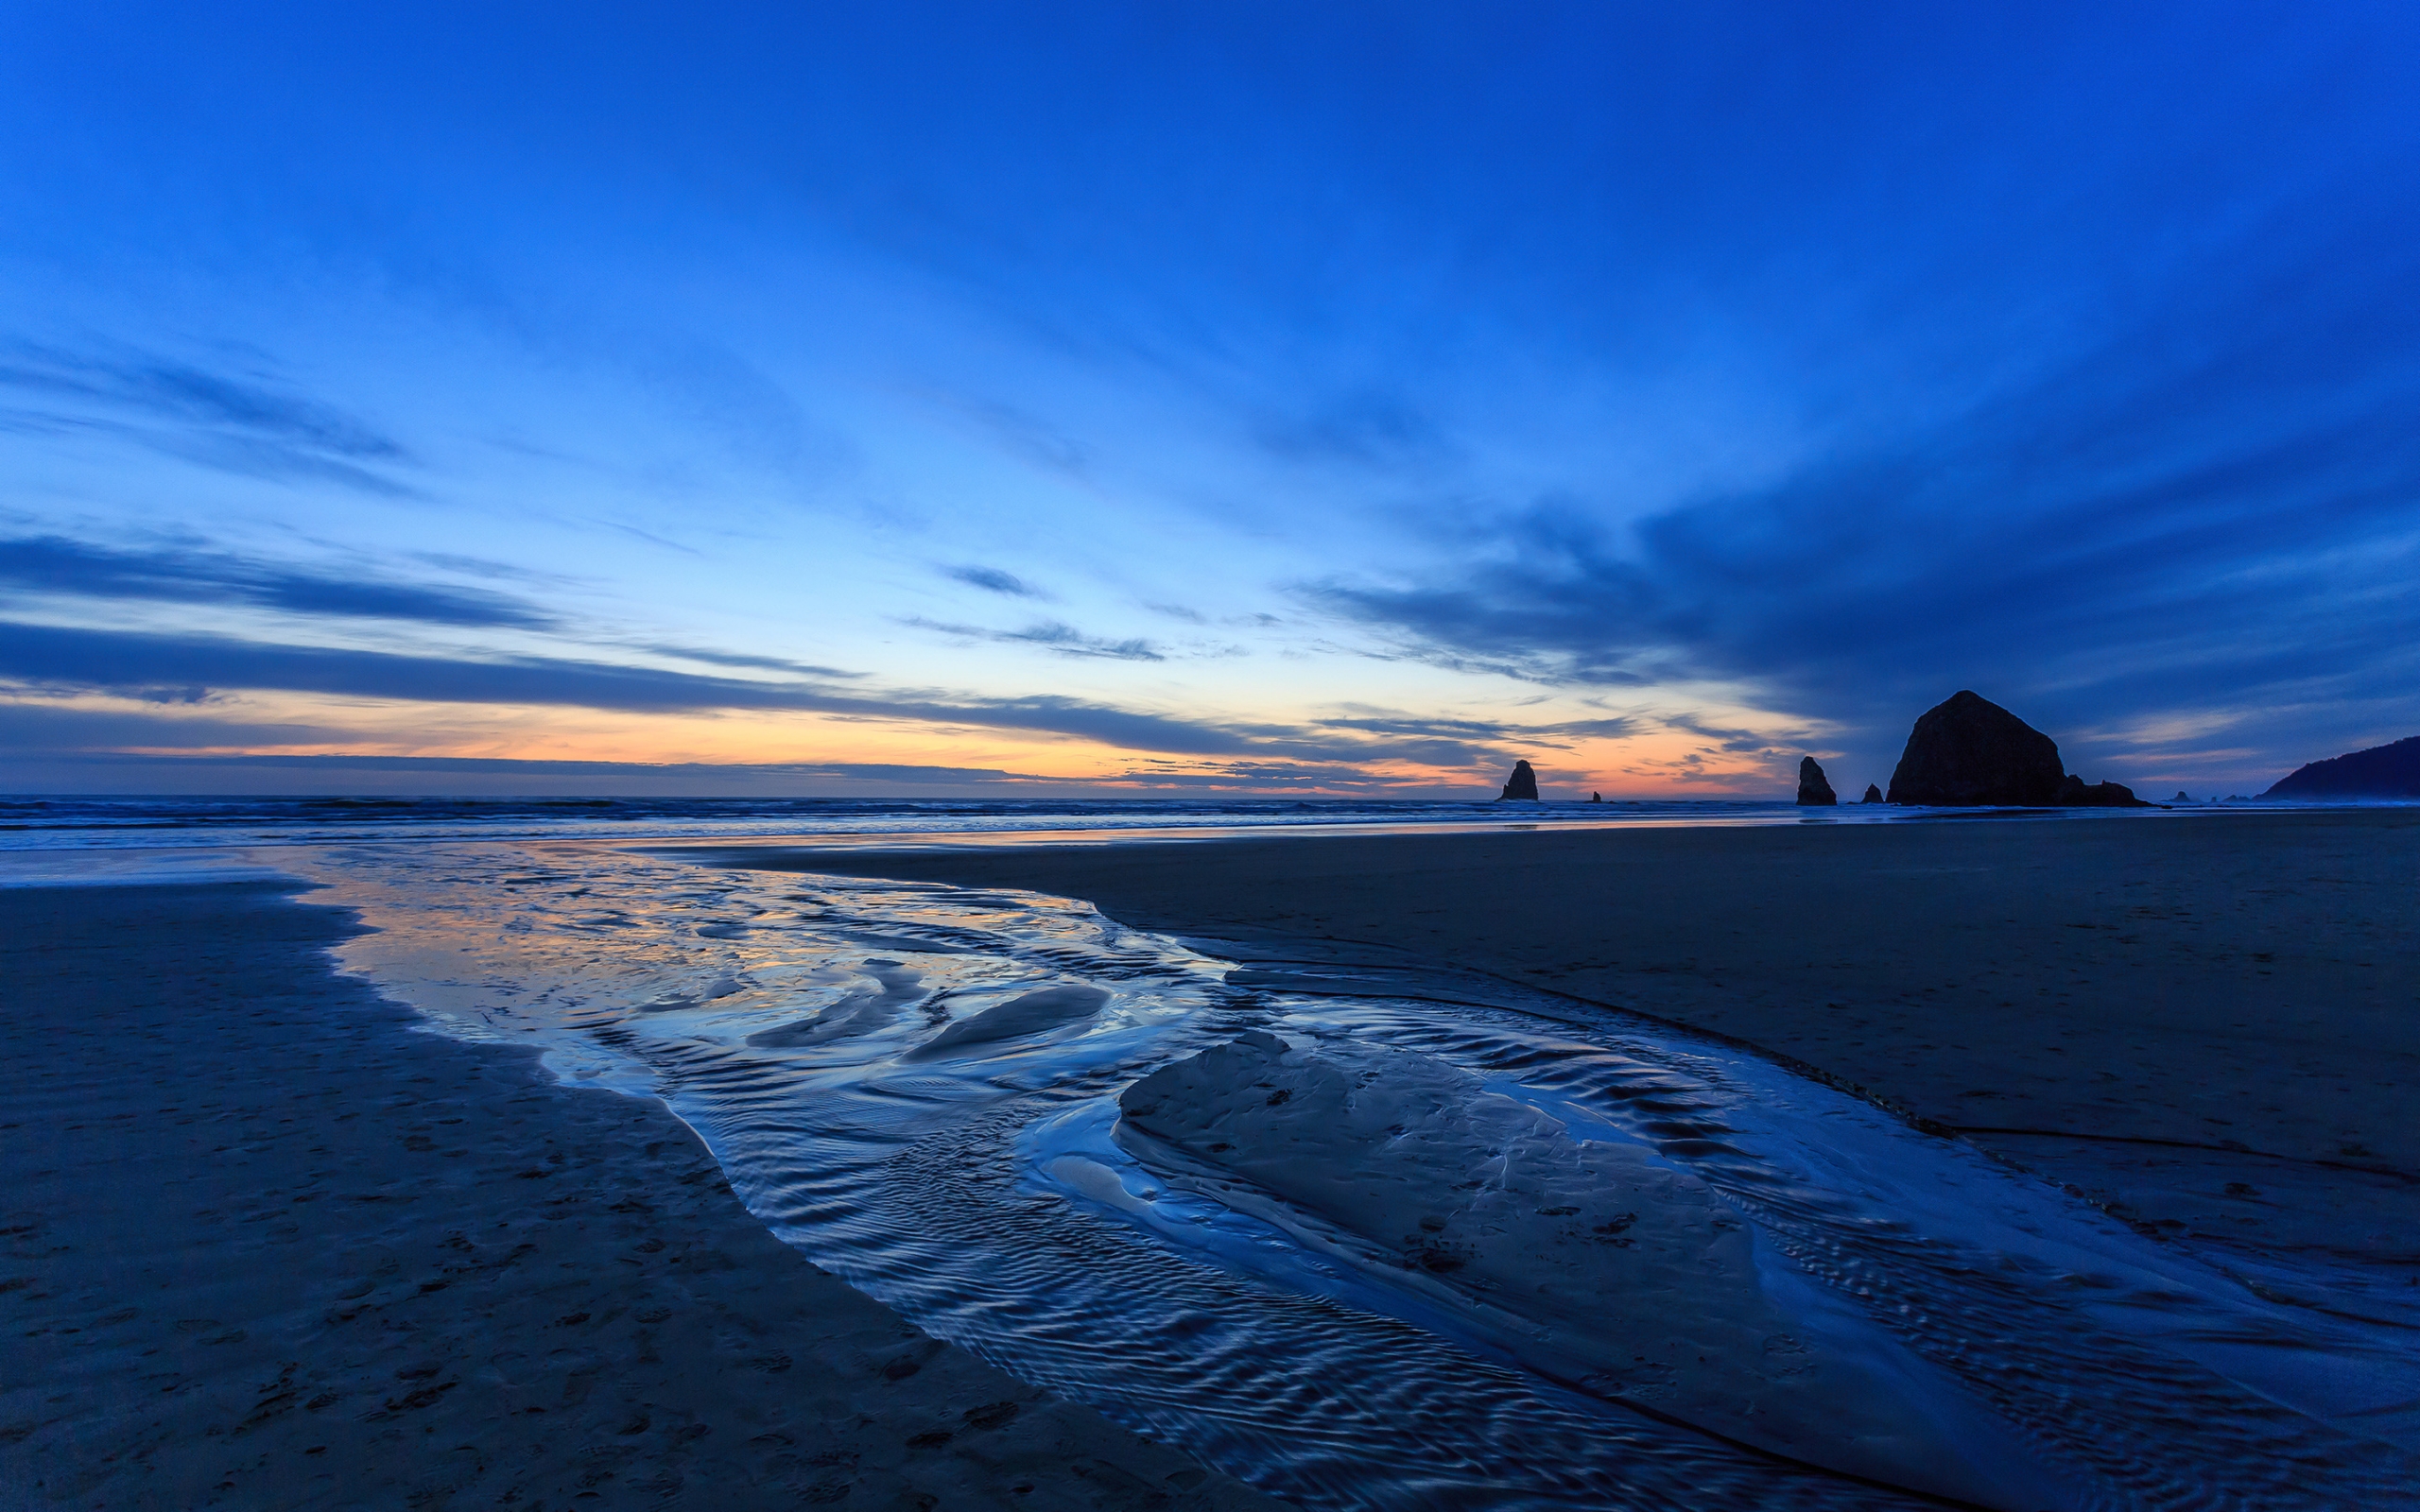 Sunset Oregon Beach for 2560 x 1600 widescreen resolution